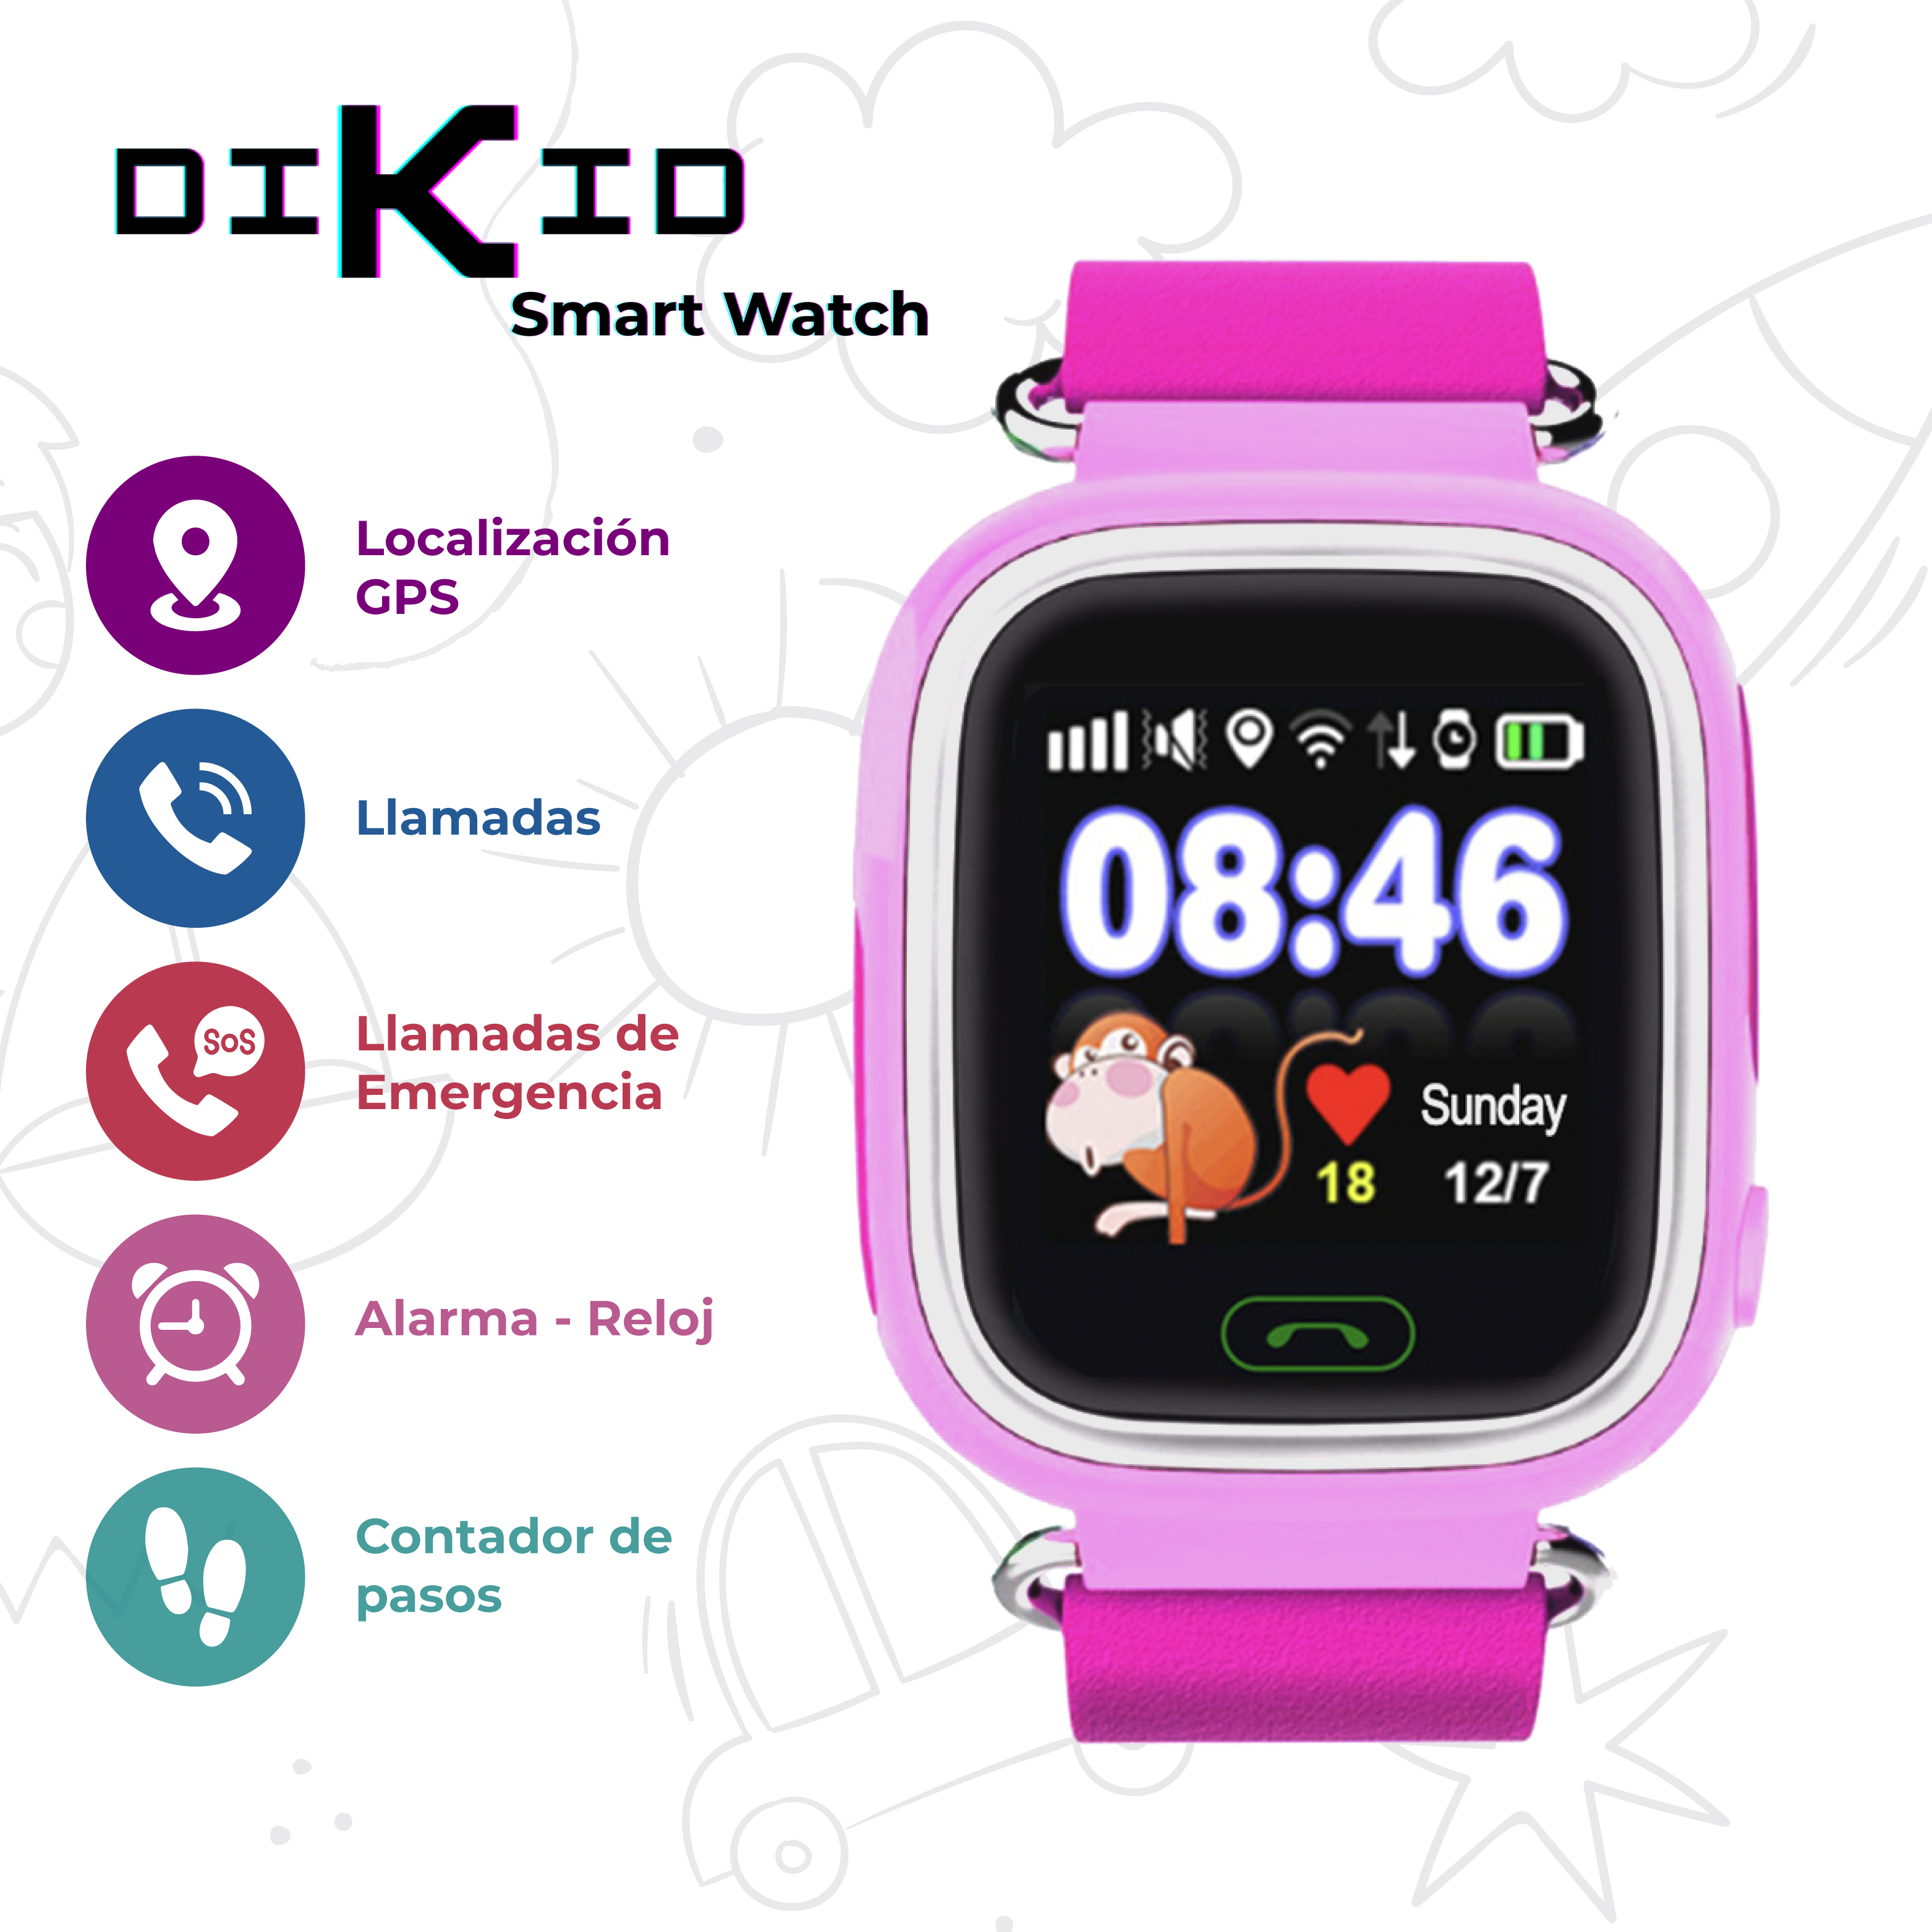 Reloj inteligente niños de 3 años. Localizador GPS , WIFI y SOS. Acerca y conecta con amigos para chatear desde el smartwatch. DIKID - mazy